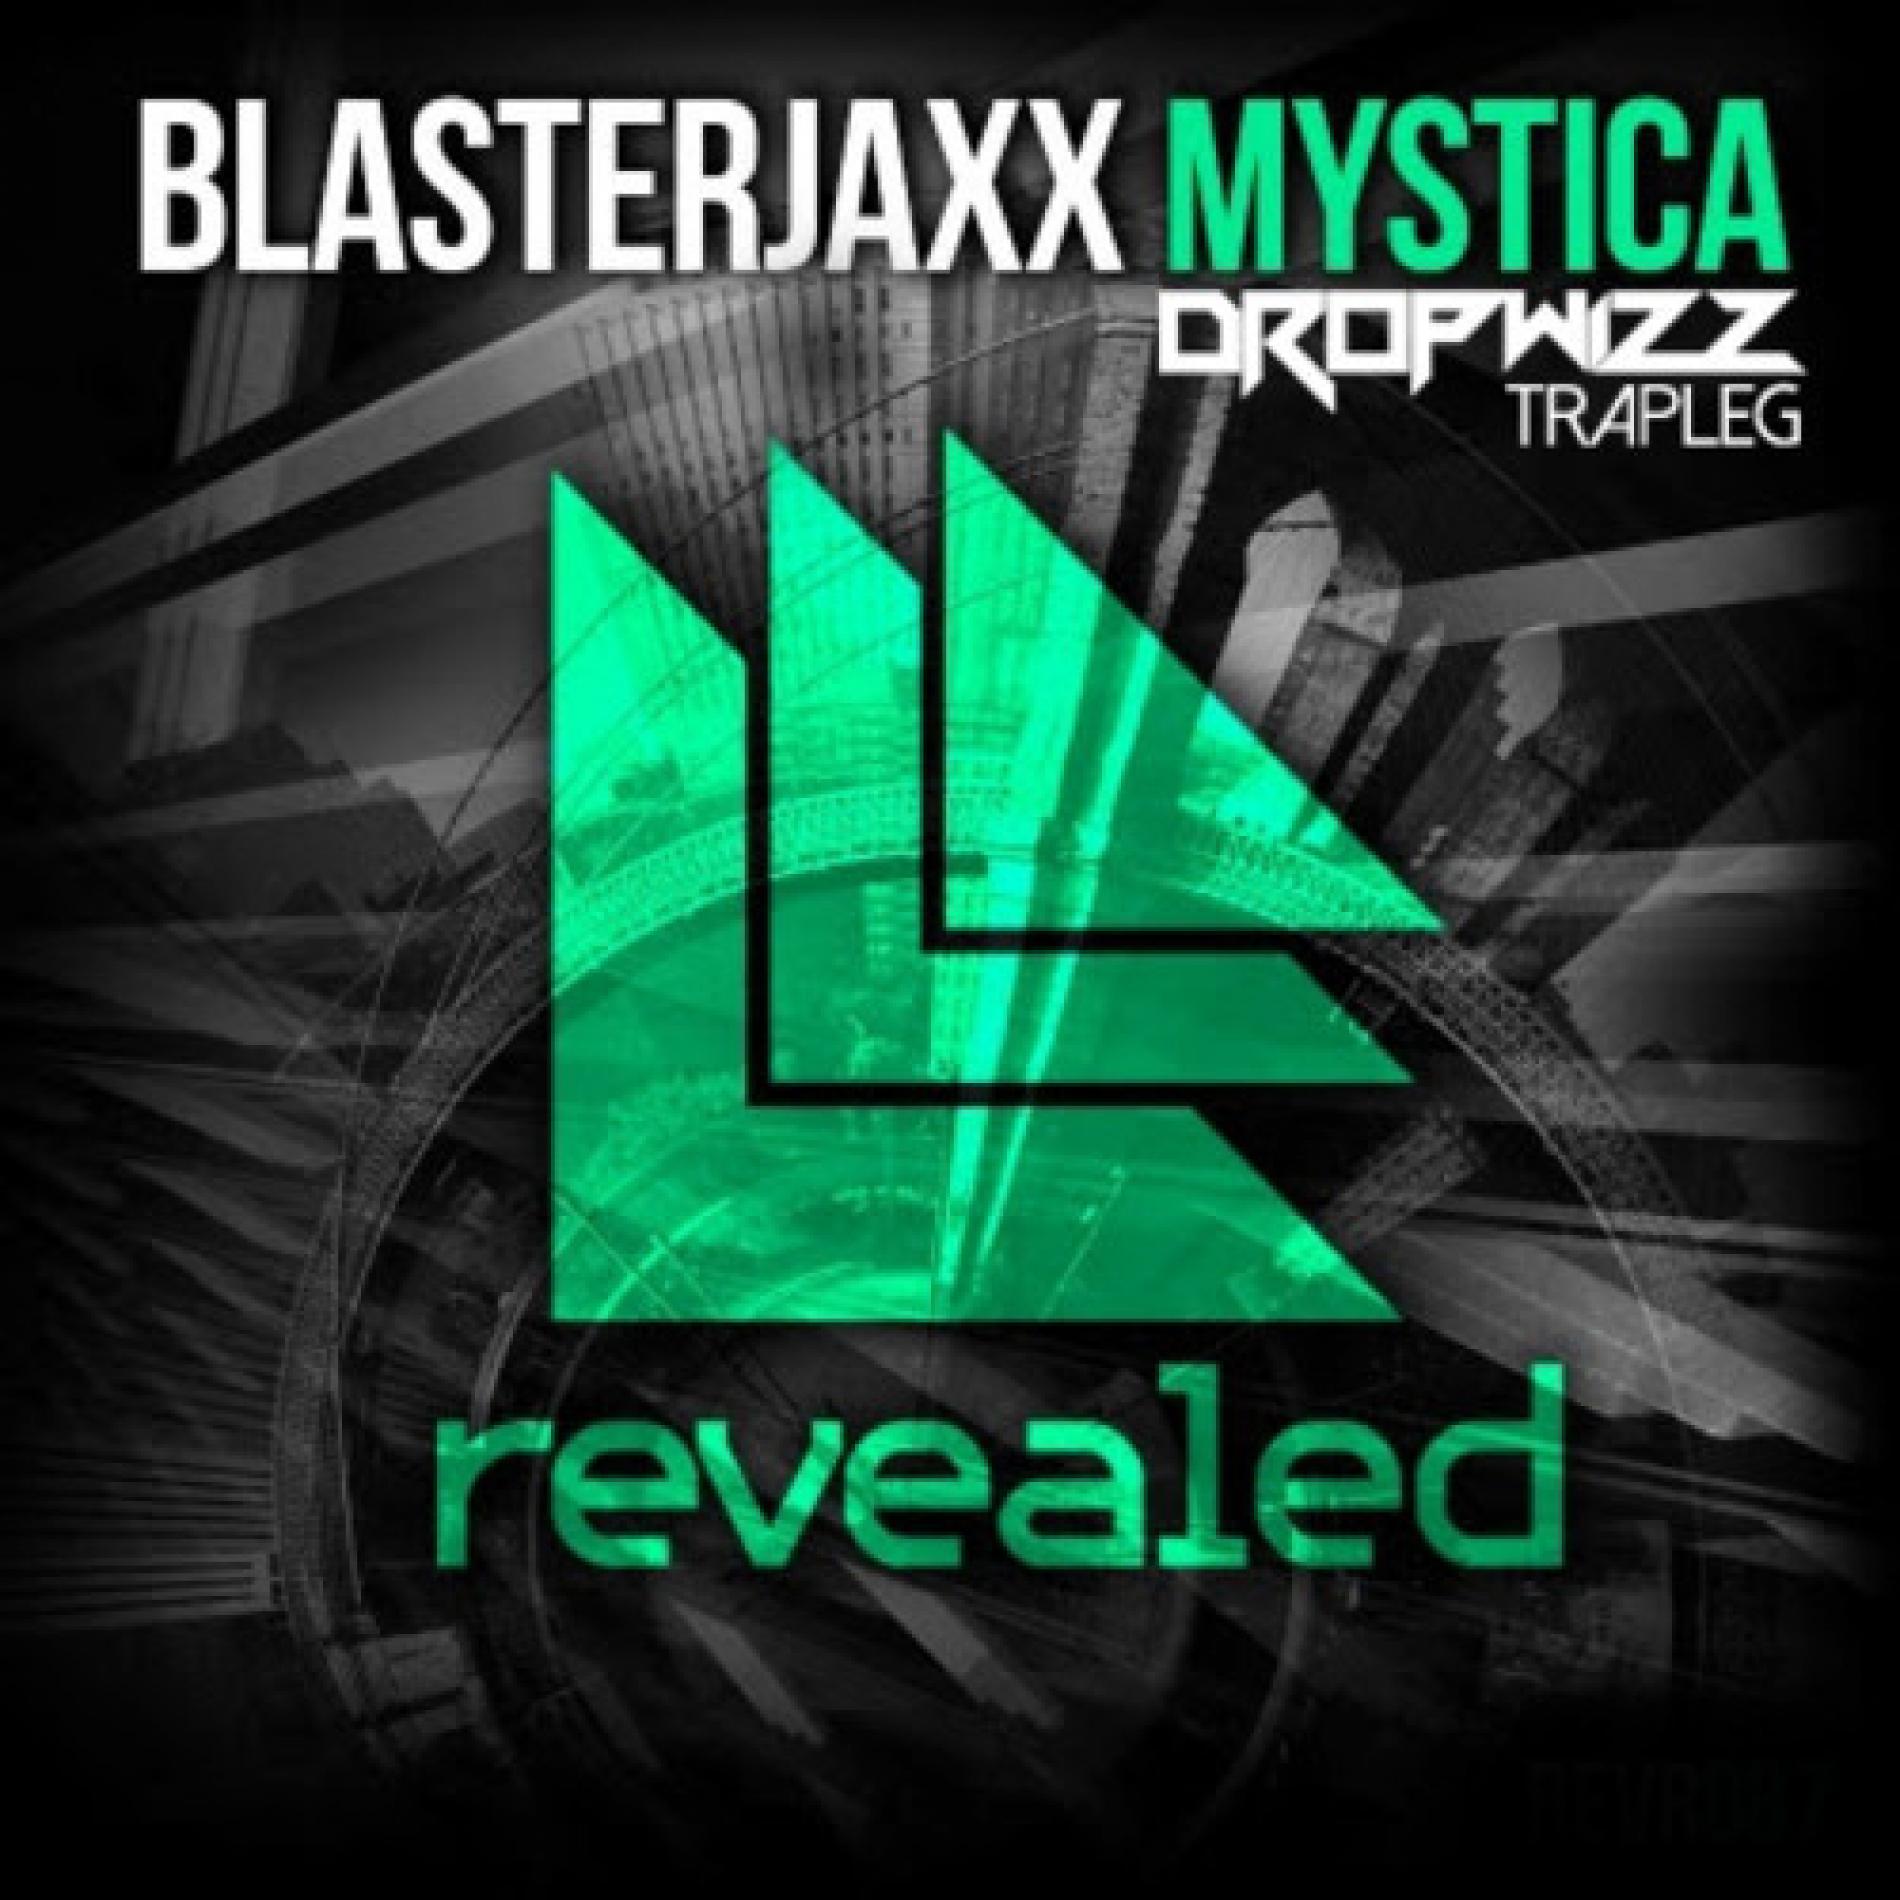 Blasterjaxx – Mystica (Dropwizz Festival Trapleg)